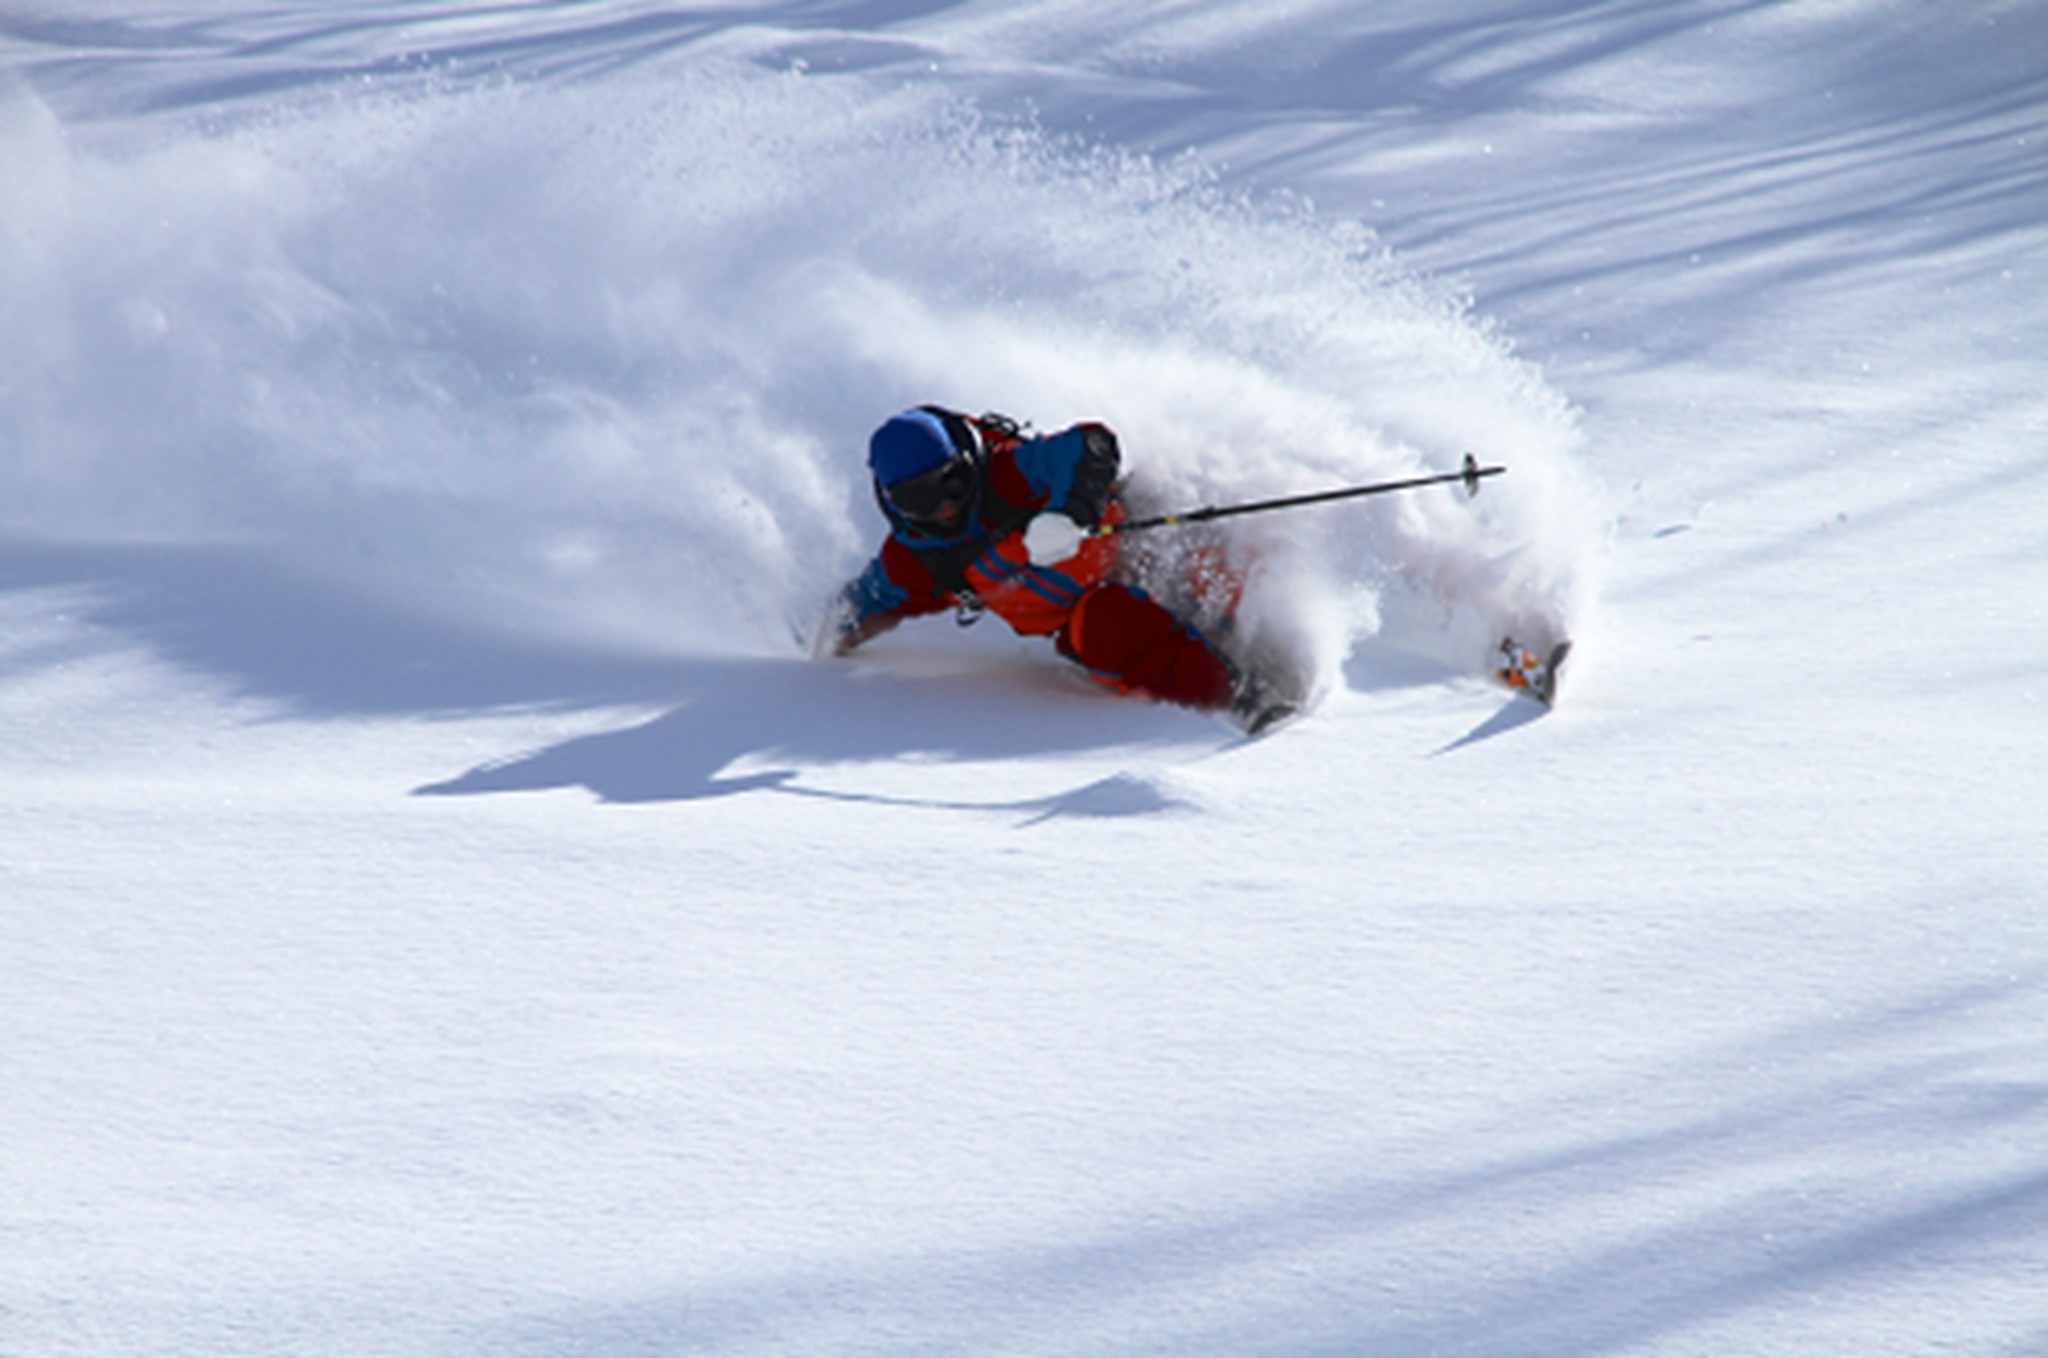 Withコロナ環境でも安心安全なスキー場を目指し営業開始へ 岐阜県郡上市の3スキー場が12月上旬 オープン 中部スノーアライアンスのプレスリリース